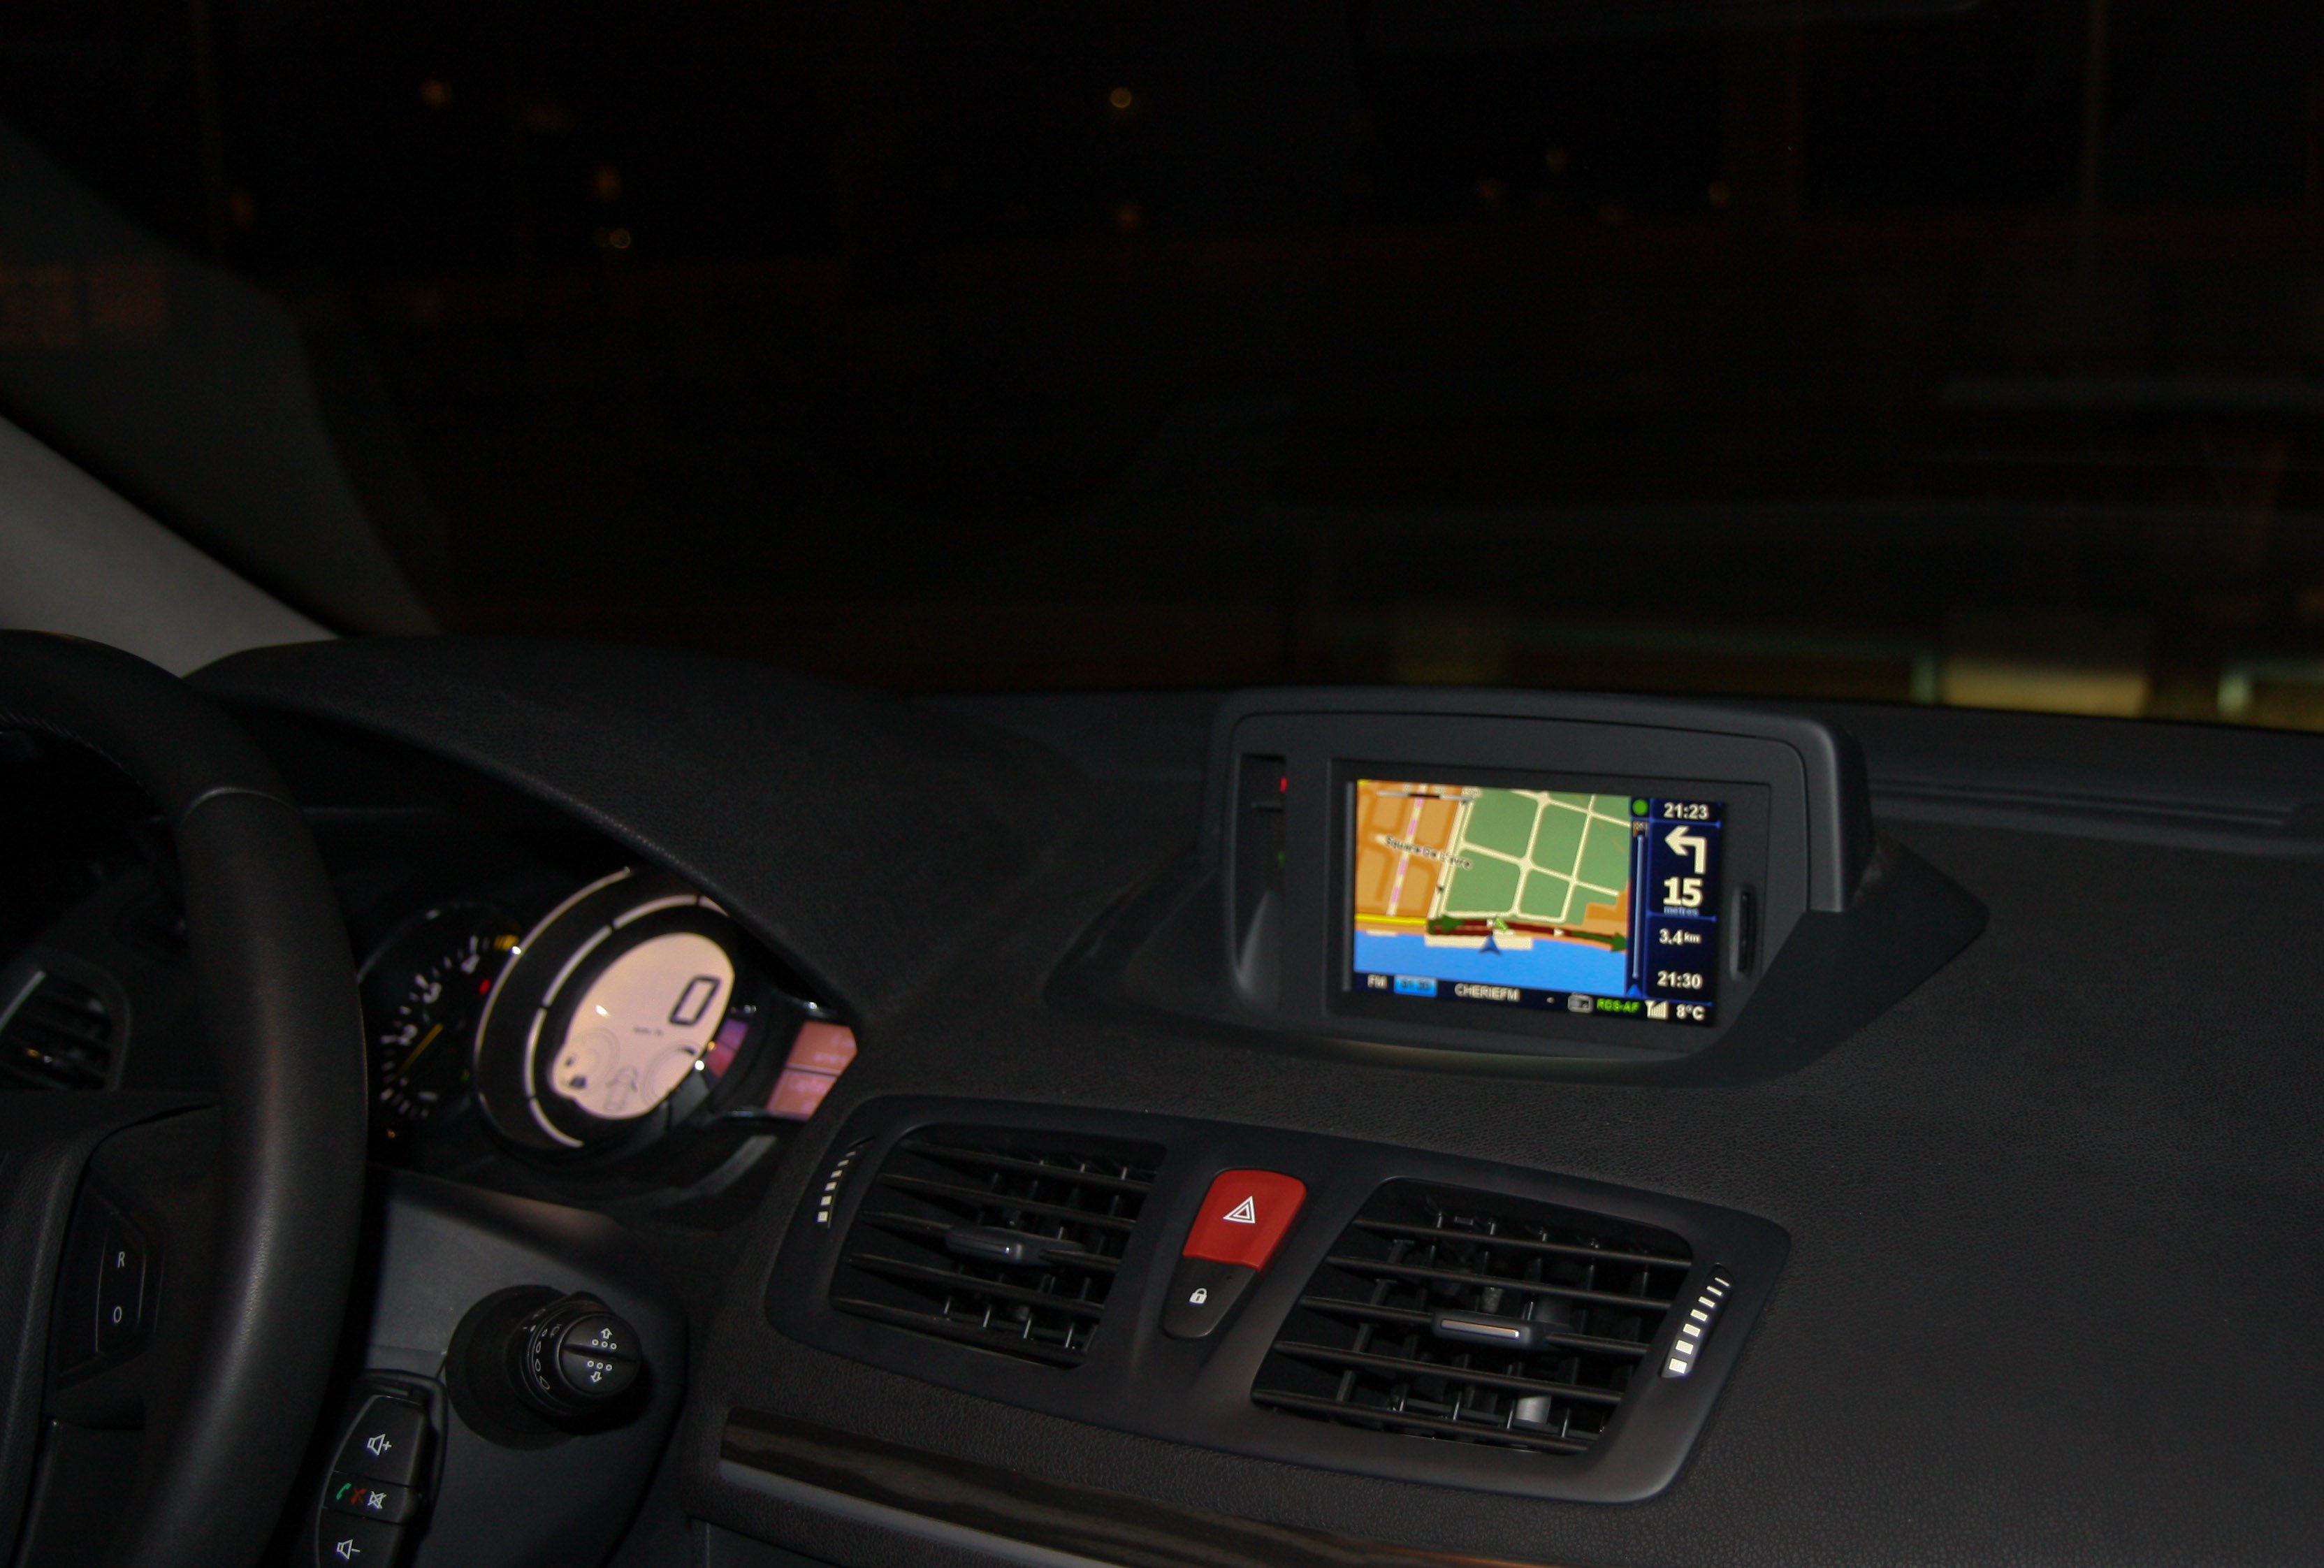 Le GPS Renault Carminat TomTom en détail